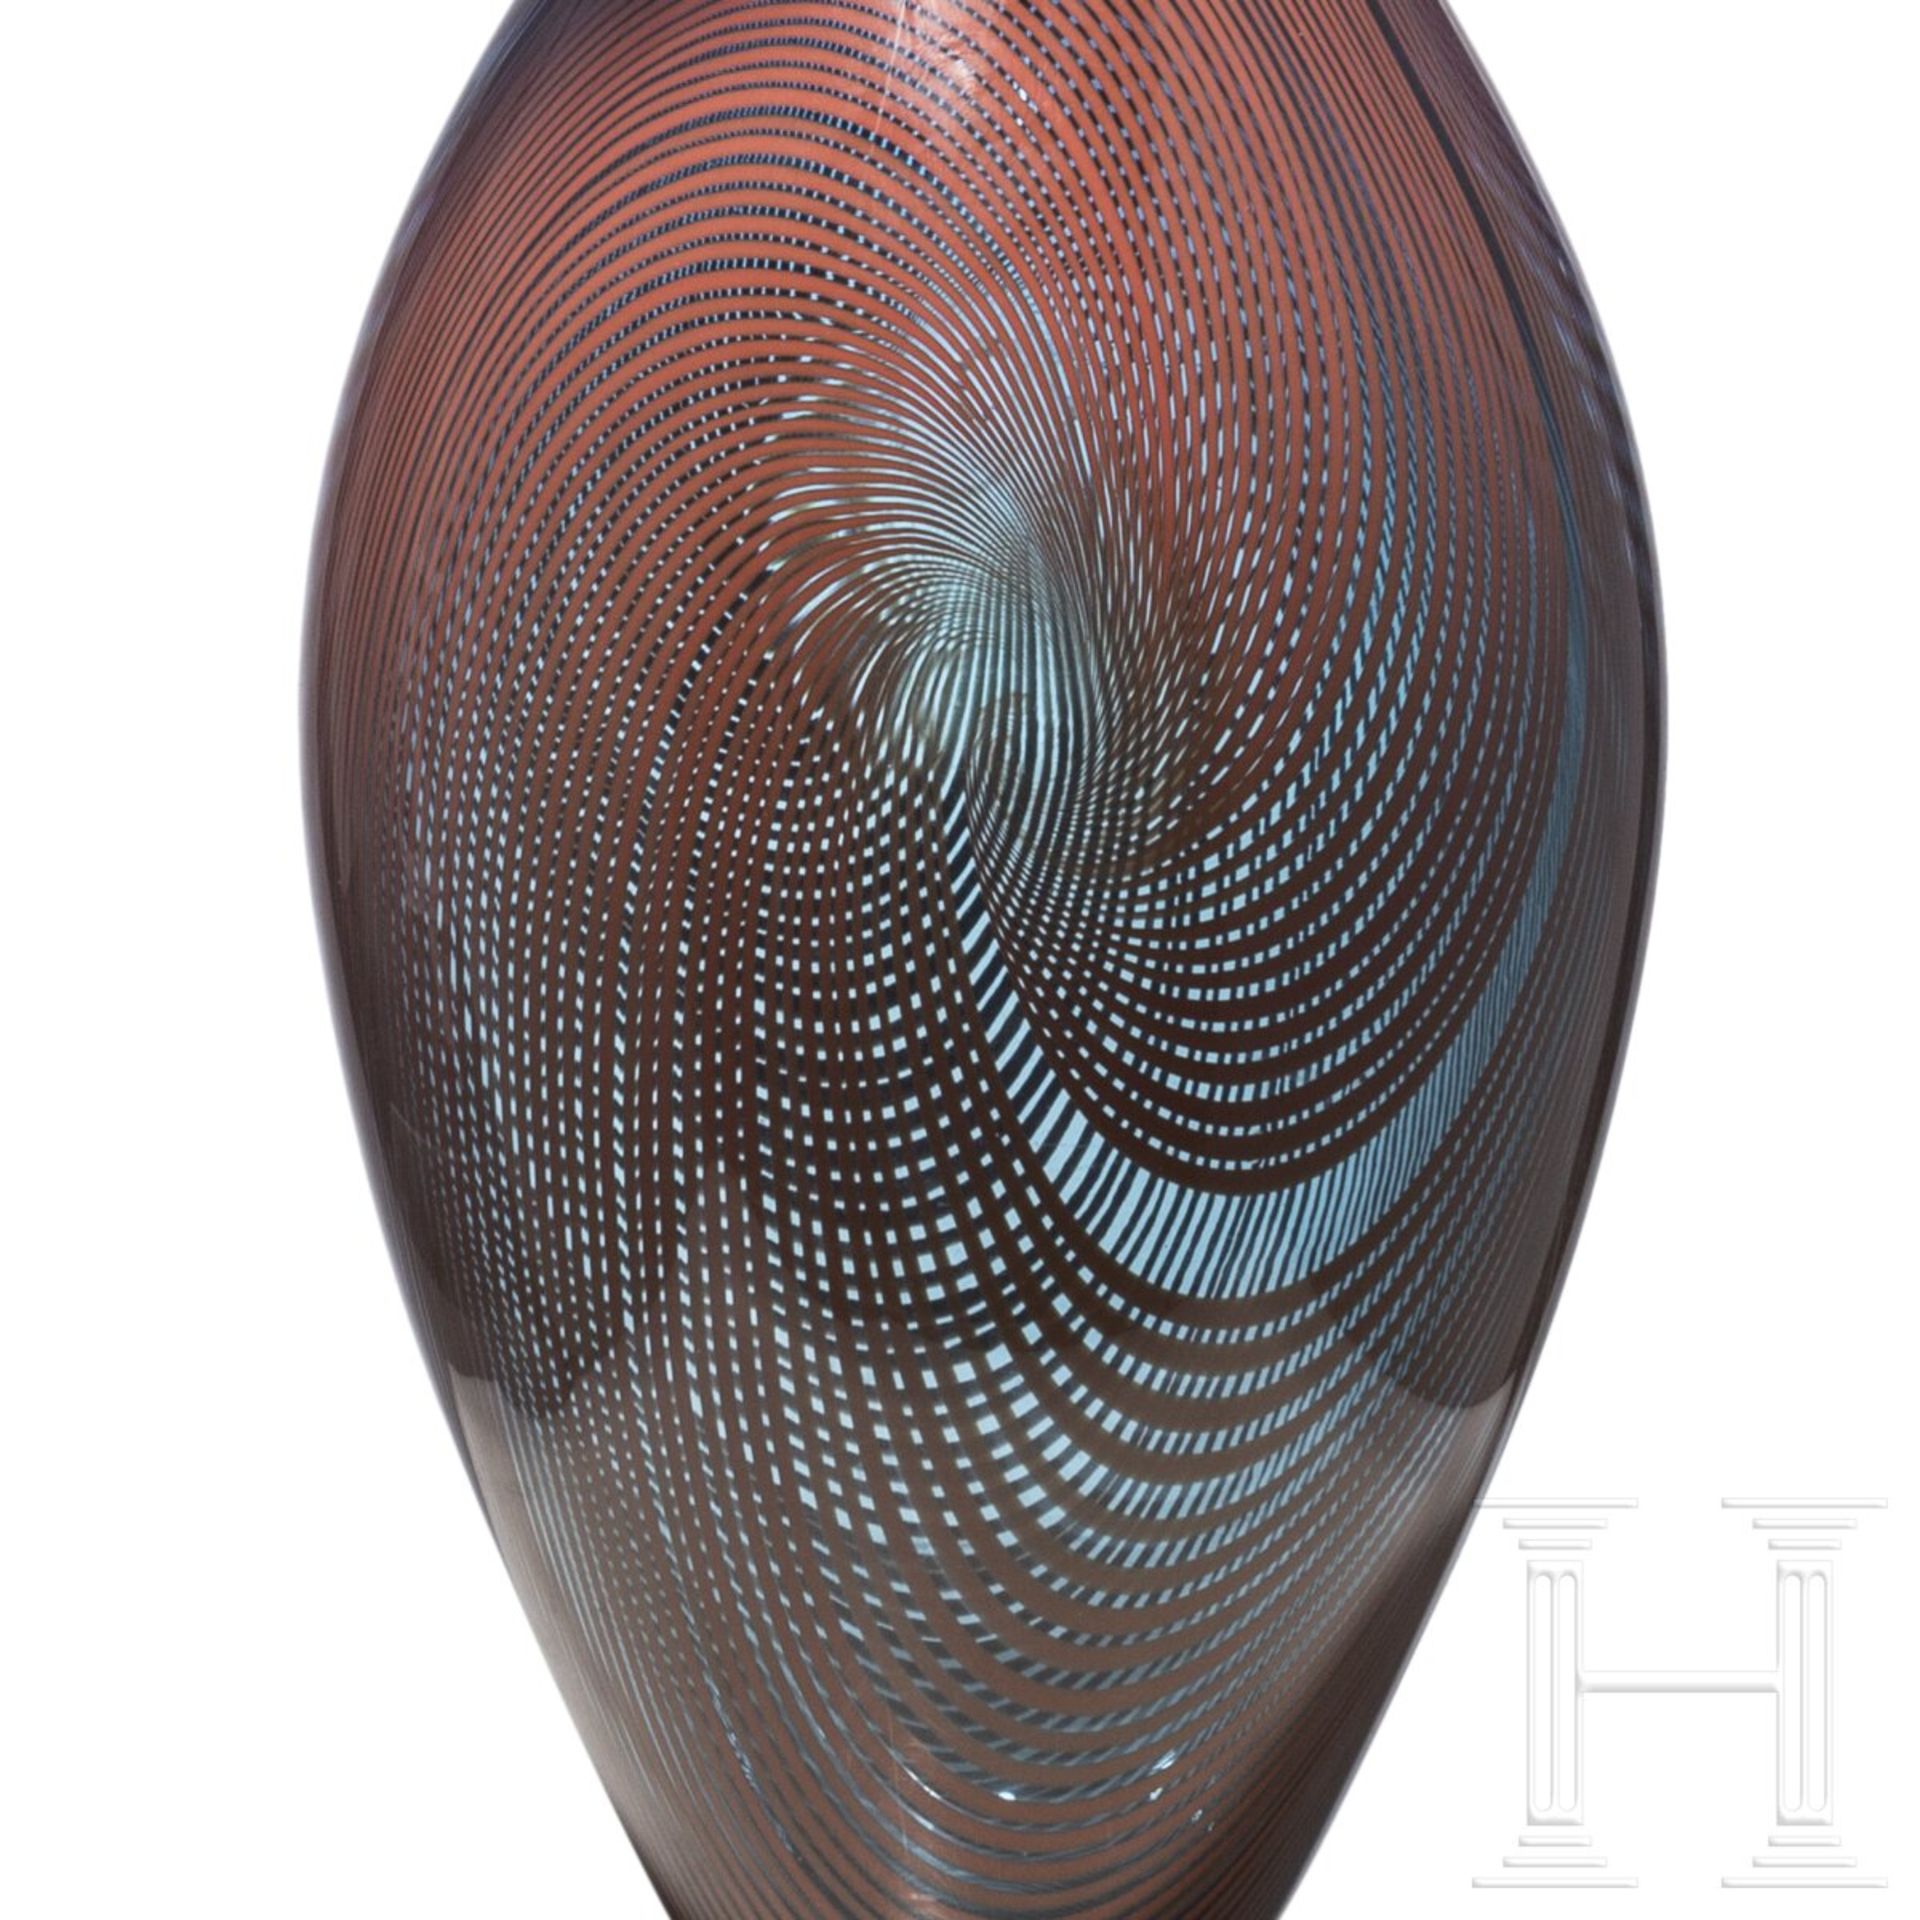 Glasskulptur "Ichibana", Gordon Webster (geboren 1978 in Calgary), datiert 2012 - Bild 7 aus 7